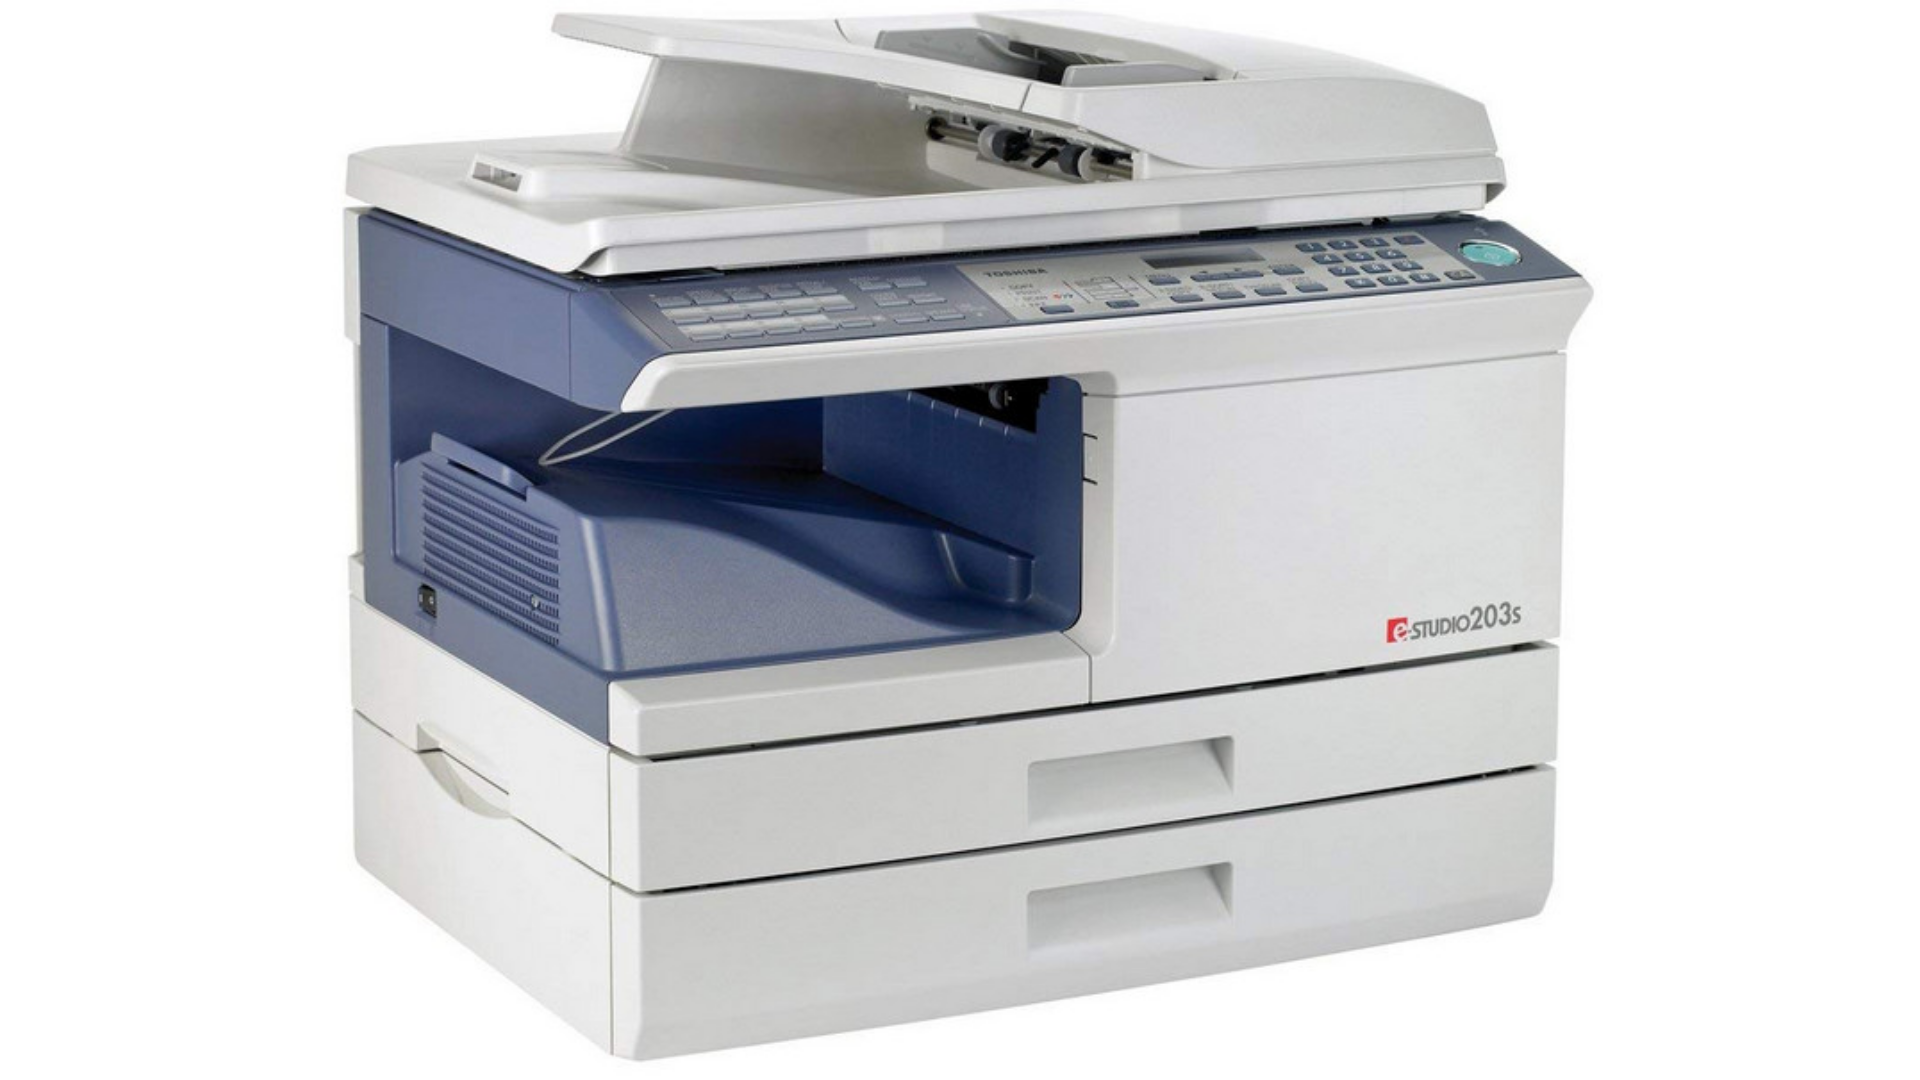 Giới thiệu thương hiệu Toshiba và mẫu máy photocopy Toshiba